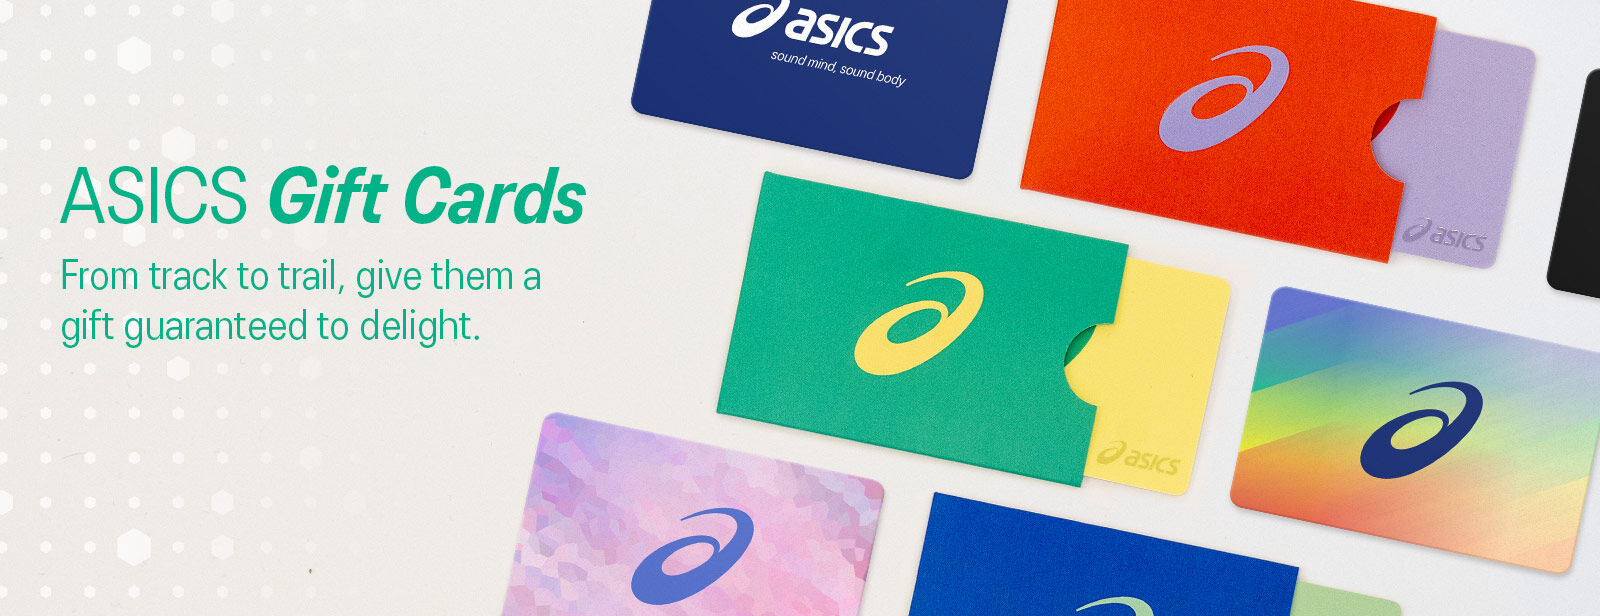 ASICS Gift Cards | ASICS